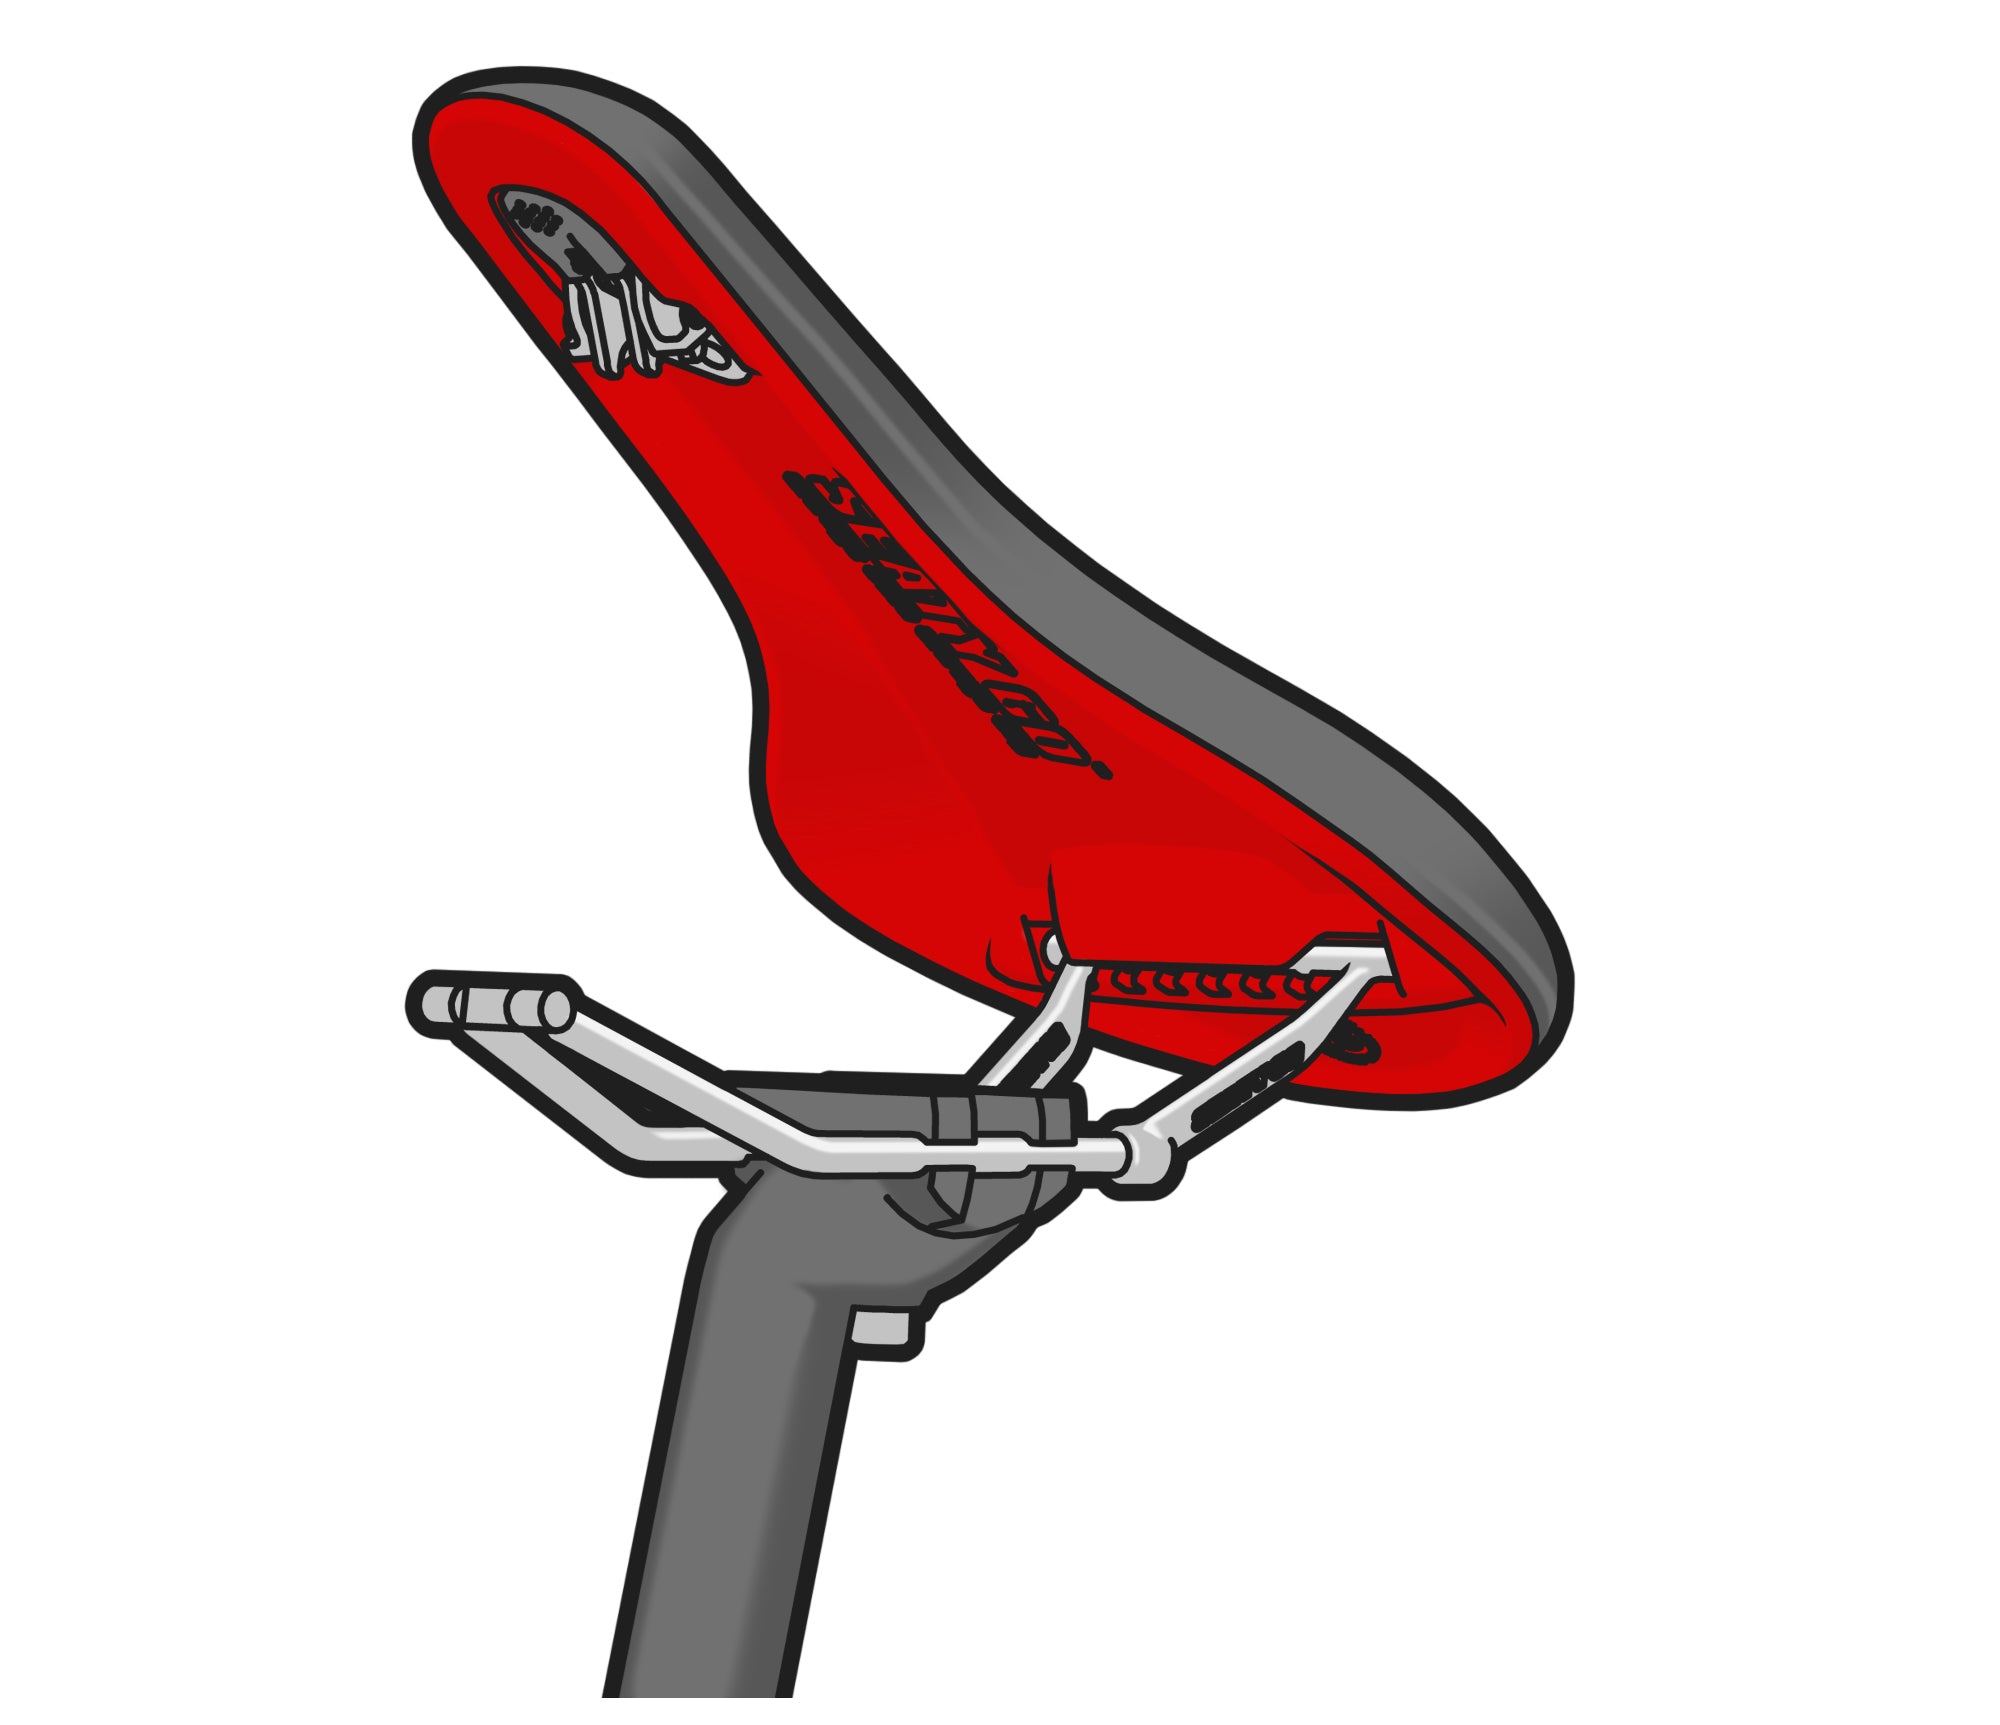 Seatylock : Foldylock Forever, revendique le titre d'antivol vélo pliable  le plus solide du monde - NeozOne